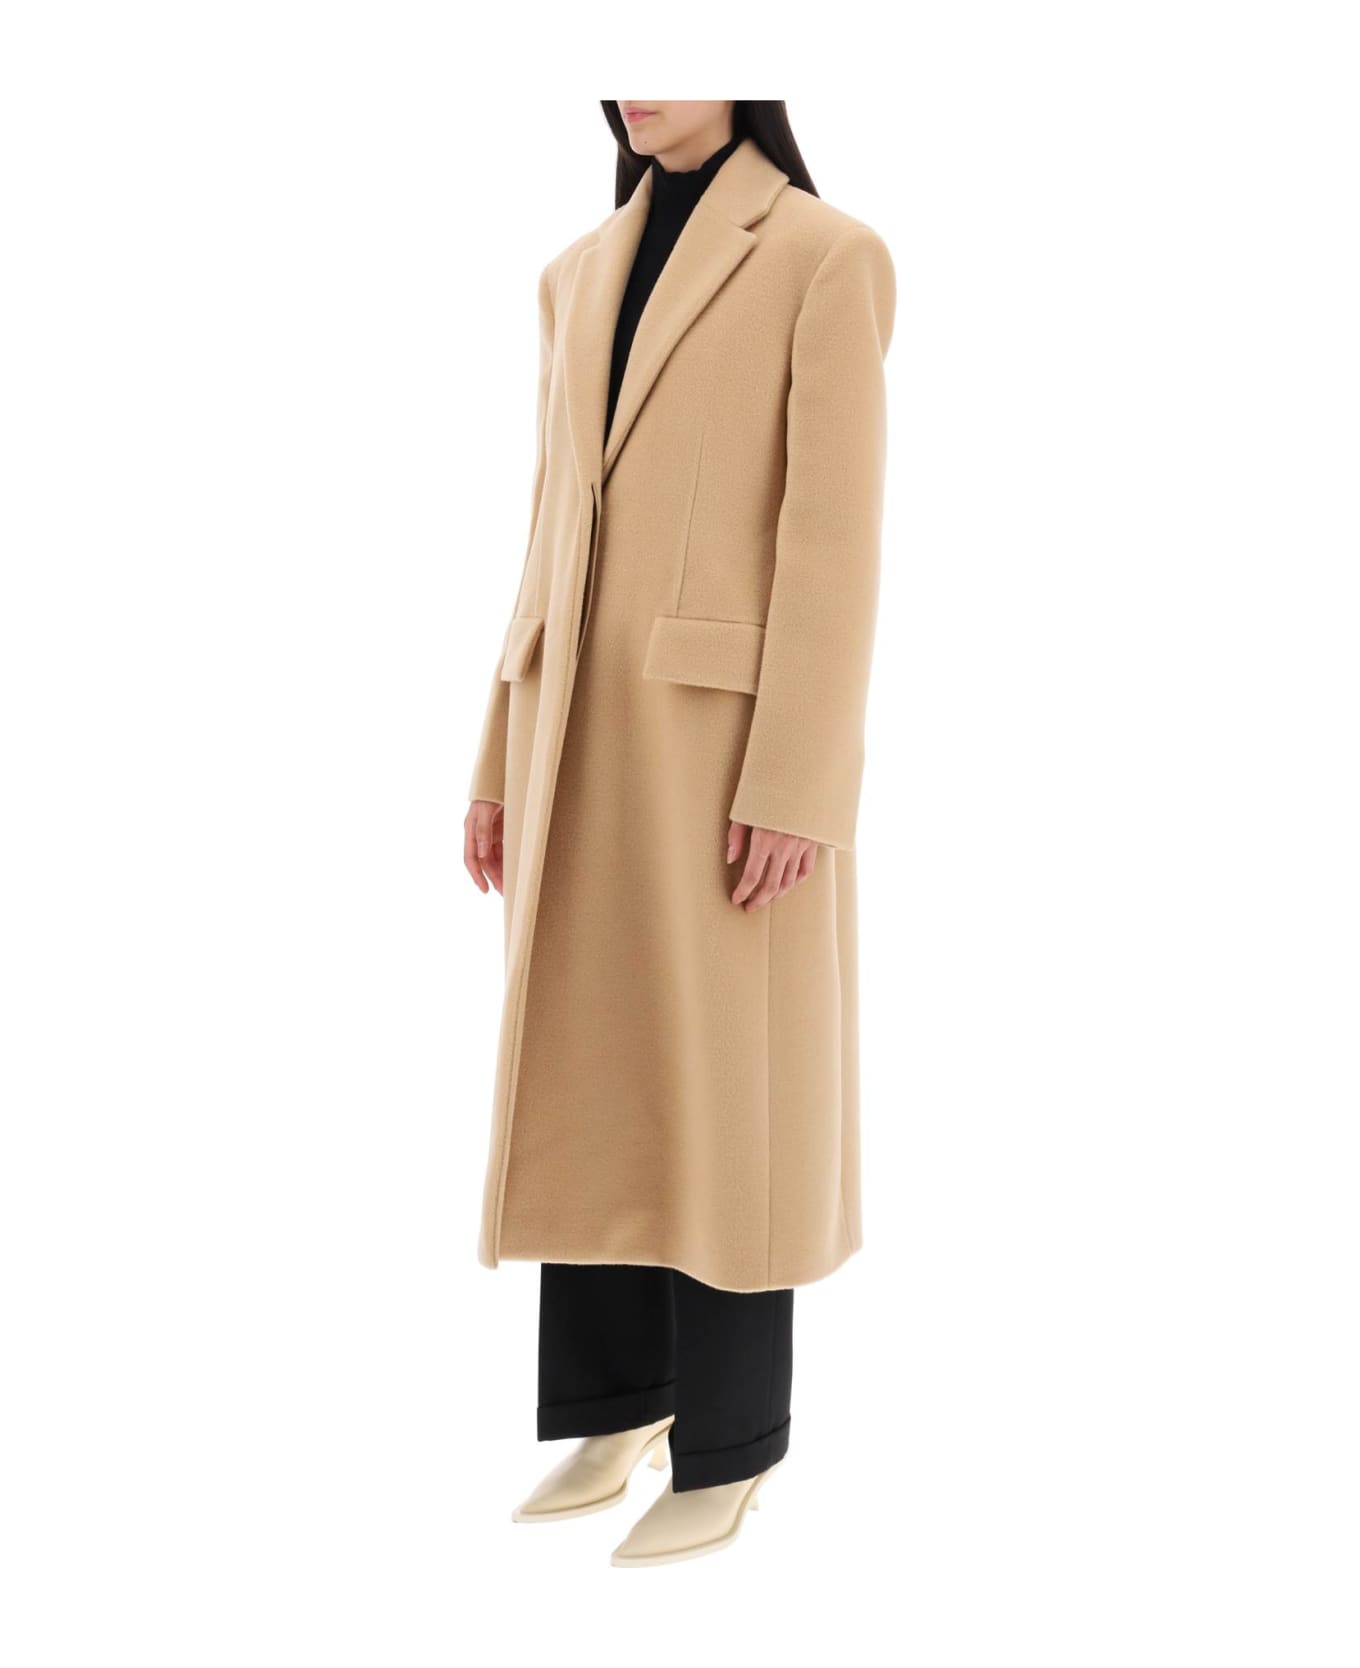 Jil Sander Tailored Coat In Virgin Wool - HAZEL (Beige)